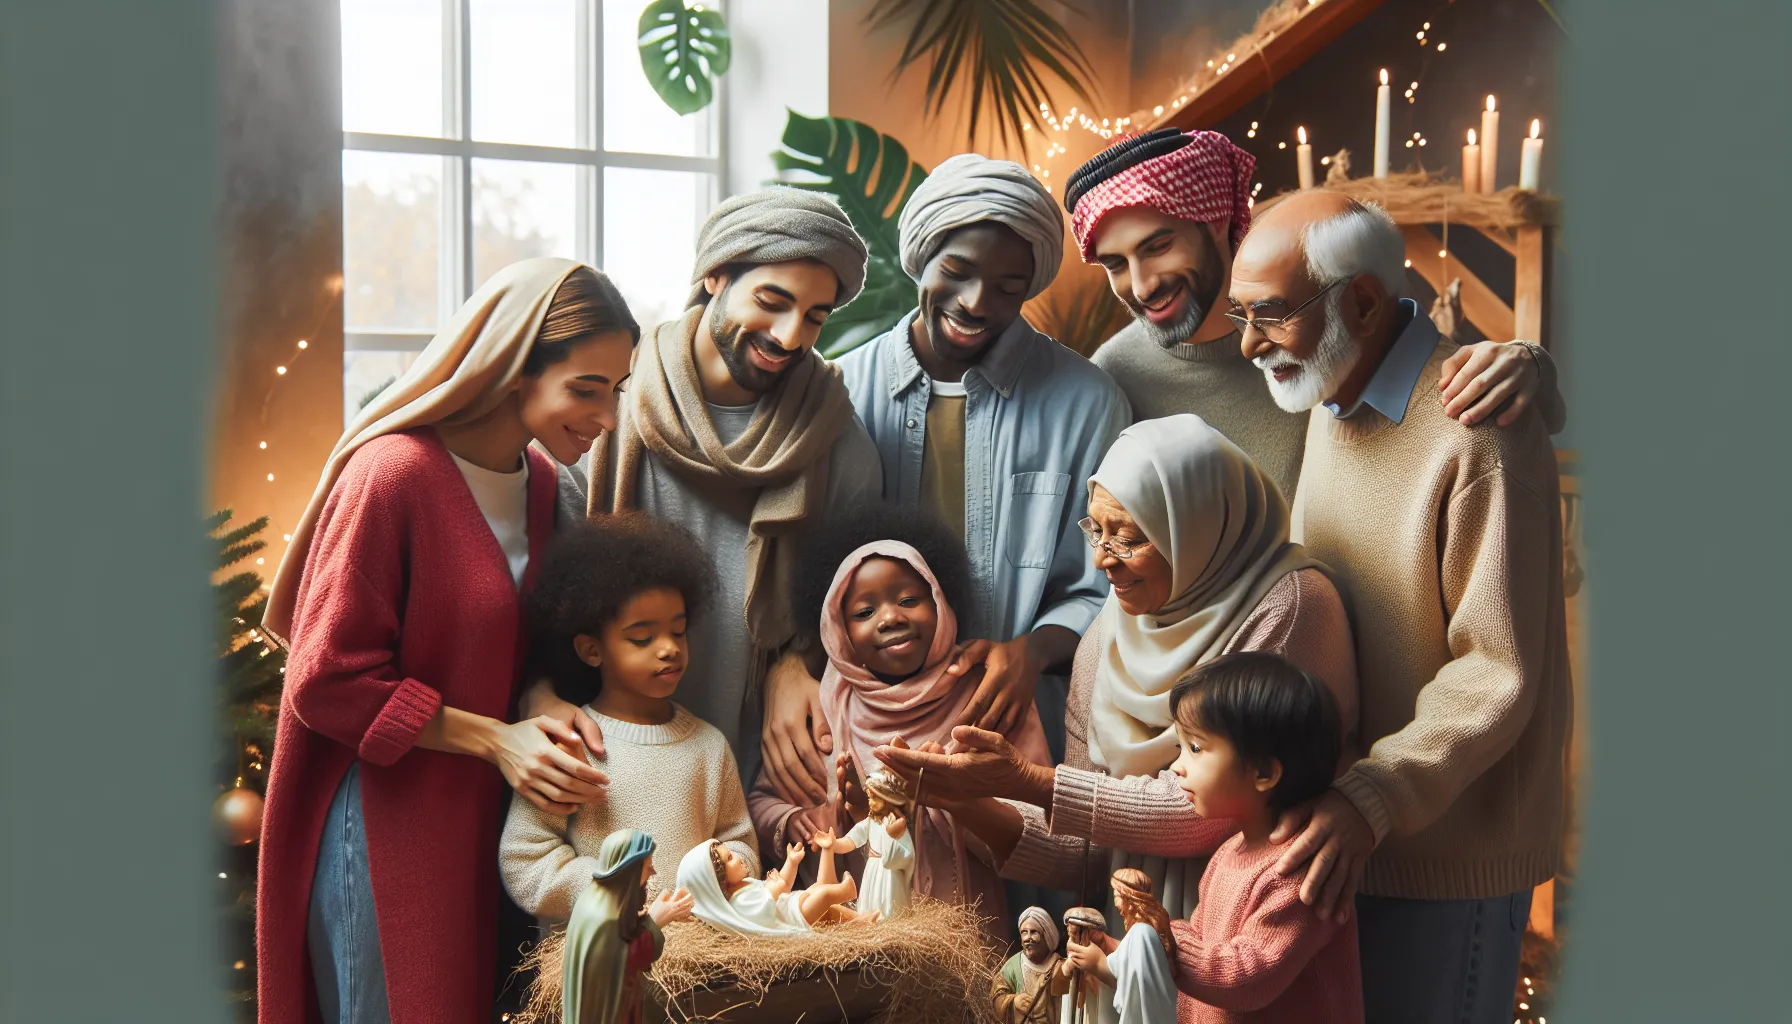 Representación de una escena navideña con una familia reunida alrededor de un pesebre